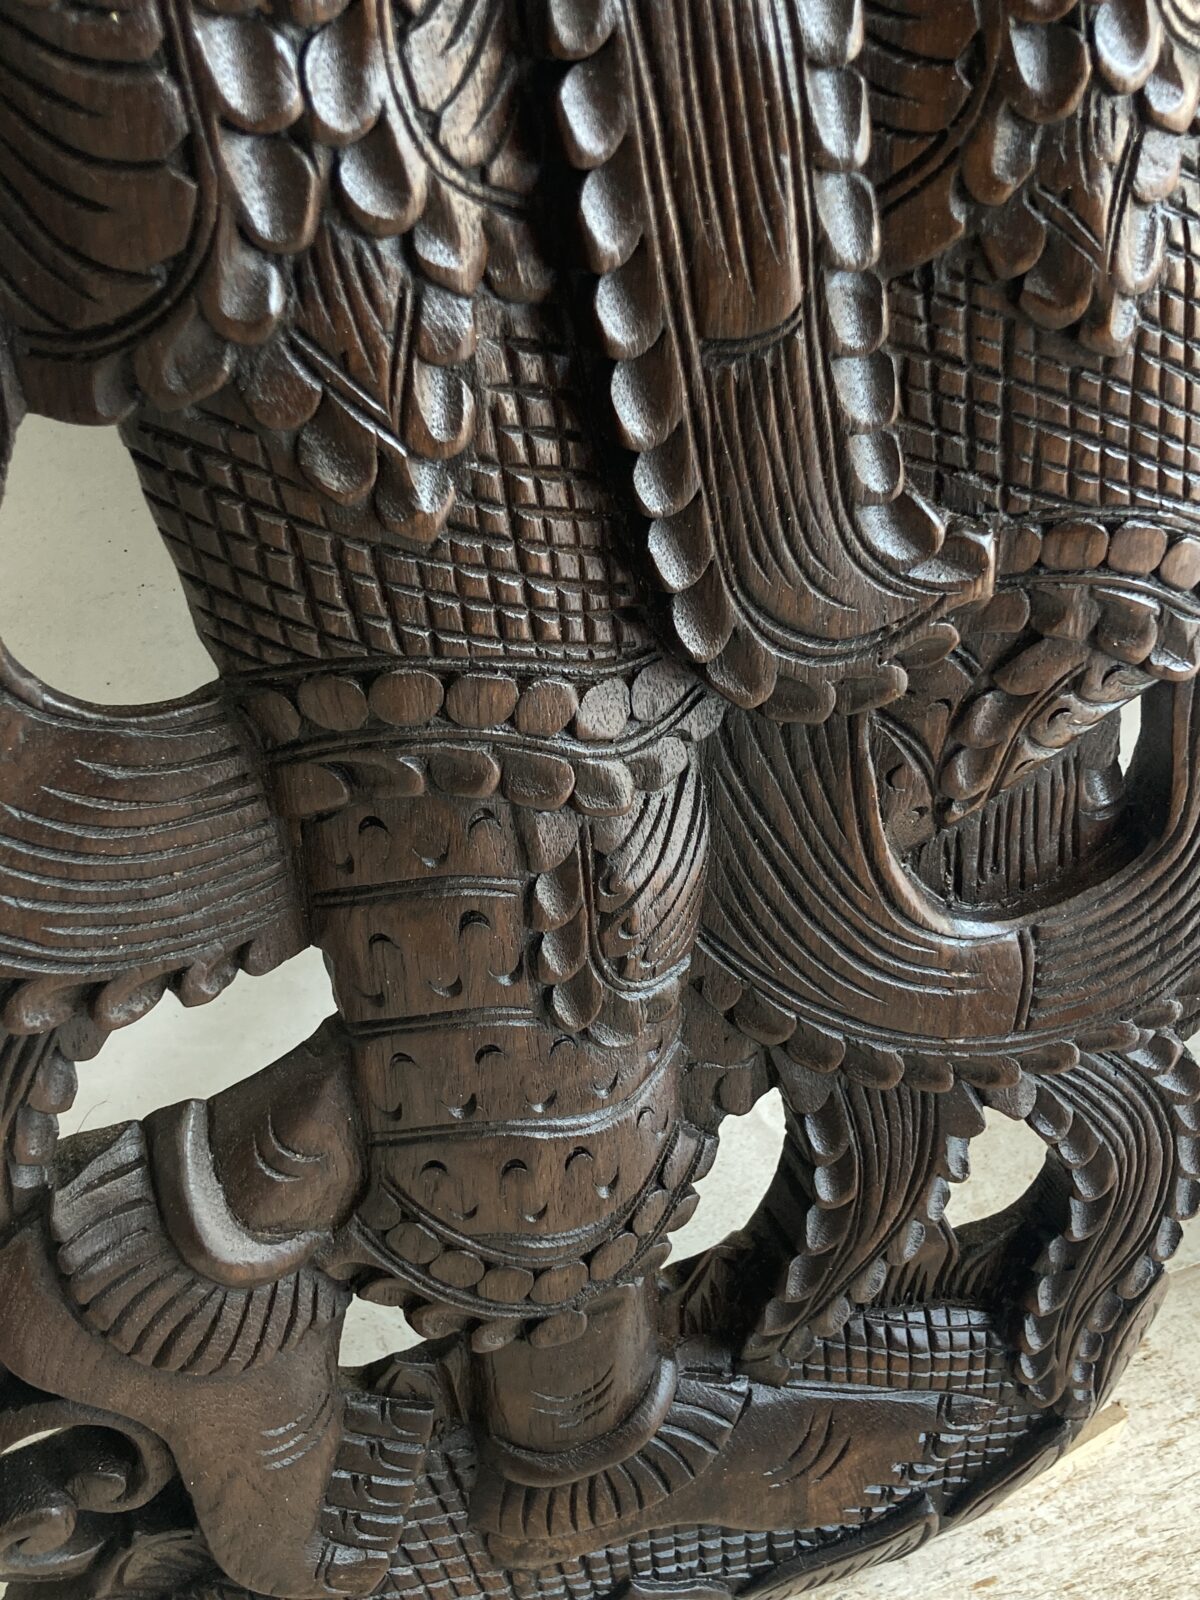 Thai wood carving in teak